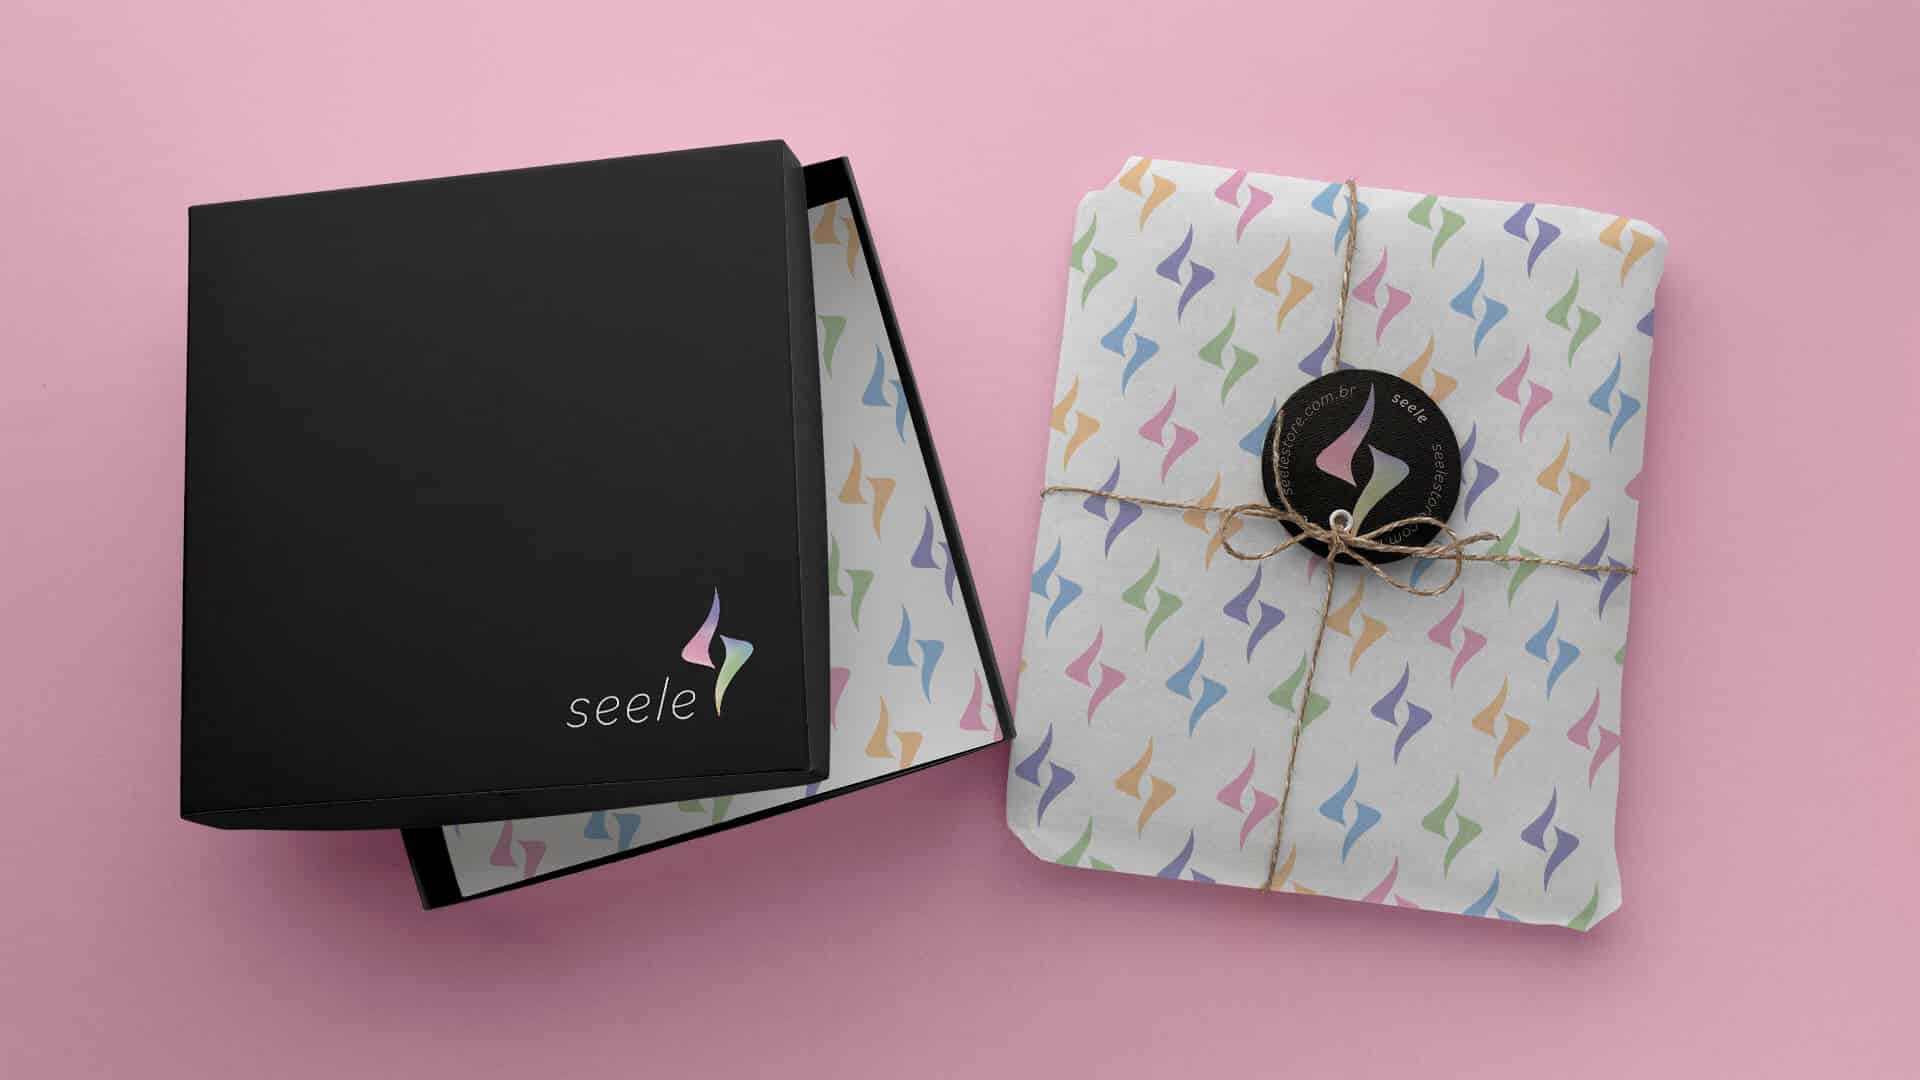 caixa preta com logo seele e embrulho com papel de seda com simbolos seele coloridos